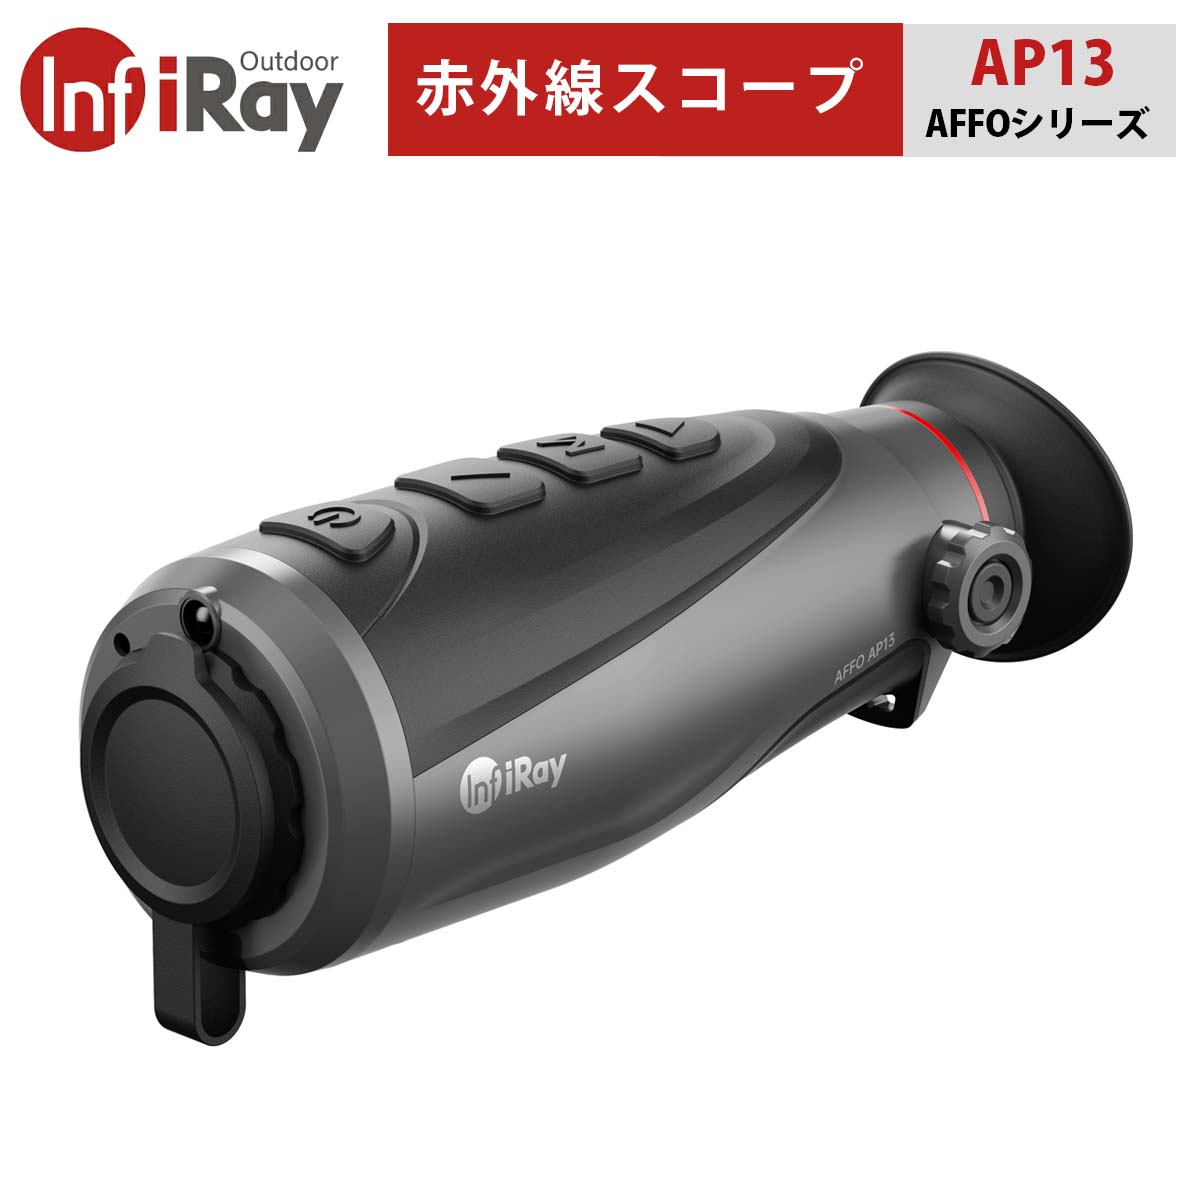 ハンディタイプのサーマルスコープ「AFFOシリーズ」は、ファッショナブルな外観とコンパクトなサイズを両立した、エントリーユーザー向けの赤外線単眼鏡です。 自社開発の12μmIR検出器を搭載し、鮮明な画像を実現。8GBの高速ストレージを内蔵し、写真撮影や動画撮影にも対応しています。 ■高感度検出器 AFFOシリーズは自社開発の高性能12um非冷却Voxセンサー採用し、鮮明なHD画像を取得することができます。 ■新設計のデザイン＆コンパクトサイズ 丸みを帯びた曲線デザインのボディは人間の手の形にフィットし、より快適なホールディング性を生み出します。またコンパクトサイズなので、持ち運びにも便利です。 ■HDMI規格で外部機器にハイビジョン映像を表示 HDMIインターフェース（高品位マルチメディアインターフェース）を採用しているので、フルデジタルの映像信号だけでなく音声も同時に送信できます。HDスクリーンやノートパソコンなどに直接接続し、高品質の映像を視聴できます。 ■ロングバッテリーライフ AFFOシリーズに採用されている低電力タイプの素子によって、最大9.5時間の駆動が可能です。 ■実用的な機能を搭載 スタジアム・レンジファインディングやPIPなどの実用的な機能が搭載されています。また、アダプターには複数の充電用アダプターを装備し、国や地域によって異なるニーズにも対応しています。 スタジアム・レンジファインディング：ターゲットとの距離の確認や ハンティングの際の位置確認に便利です。 PIP（ピクチャーインピクチャー）：カーソル位置の画面を2倍に拡大し、ターゲットを強調することで、細部の確認をアシストします。 ■さまざまなシーンに対応する画像モード ホットターゲットハイライトモードでは、ホワイトホット、ブラックホット、レッドホットに加え、豊富なカラーパレットによって、対象物をより鮮明に表示します。またホットスポット追跡機能を搭載し、広い検出温度範囲と動作温度範囲を実現しました。 ■強化されたプロテクション性能 レンズ保護性能の向上：硬度と耐衝撃性を高めた耐久性のある硬質プラスチック製レンズキャップ。 防水性の向上：雨天時のアウトドアシーンでも安心して使える外付けスクリーンを採用し、インターフェースへの水の浸入を防止。 ■8GBの内蔵メモリ 本体に8GBのメモリを内蔵し、撮影した熱画像や動画を保存できます。 モデル AP09 AP13（この商品） AL19 AL25 検出器タイプ 非冷却Vox 検出器解像度(ピクセル) 256×192 384×288 ピクセルピッチ(um) 12 NETD(mK)(ノイズ等価温度差) ≤40 フレームレート（Hz） 25 50 対物レンズ（mm） 9 13 19 25 FOV 19.4×12.2 13.5×8.4 13.8×8.7 10.5×6.6 拡大倍率 1.3× 2.0× 2.0× 2.5× デジタルズーム 1×/2× 1×/2×/4× 視度調整 -3～+1 -7～+2 検出可能距離（m） (目標サイズ:1.7m×0.5m,P(n)=99%) 460 670 980 1300 ディスプレイタイプ 有機EL ディスプレイ解像度（ピクセル） 640×400 電源 内蔵リチウムイオンバッテリー 3.6Ah / 3.6V 稼働時間 最大9.5時間 最大7.5時間 外部電源 5V（USB Type-C） 防塵防水性 IP67 メモリ容量 8GB WiFi/アプリ サポート（InfiRayoutdoor） 動作温度（℃） -20～+50 本体重量（g） 340 350 寸法（mm） 160×60×60 169×60×60 1年無償保証永久修理保証初期不良の即交換対応万が一の故障でもご安心ください。赤外線スコープ AFFOシリーズ【iRay AP13】｜赤外線単眼鏡 ファッショナブル コンパクト IR高感度検出器 高速ストレージ 写真 動画 HDMI規格 低電力タイプ スタジアム・レンジファインディング PIP 画像モード